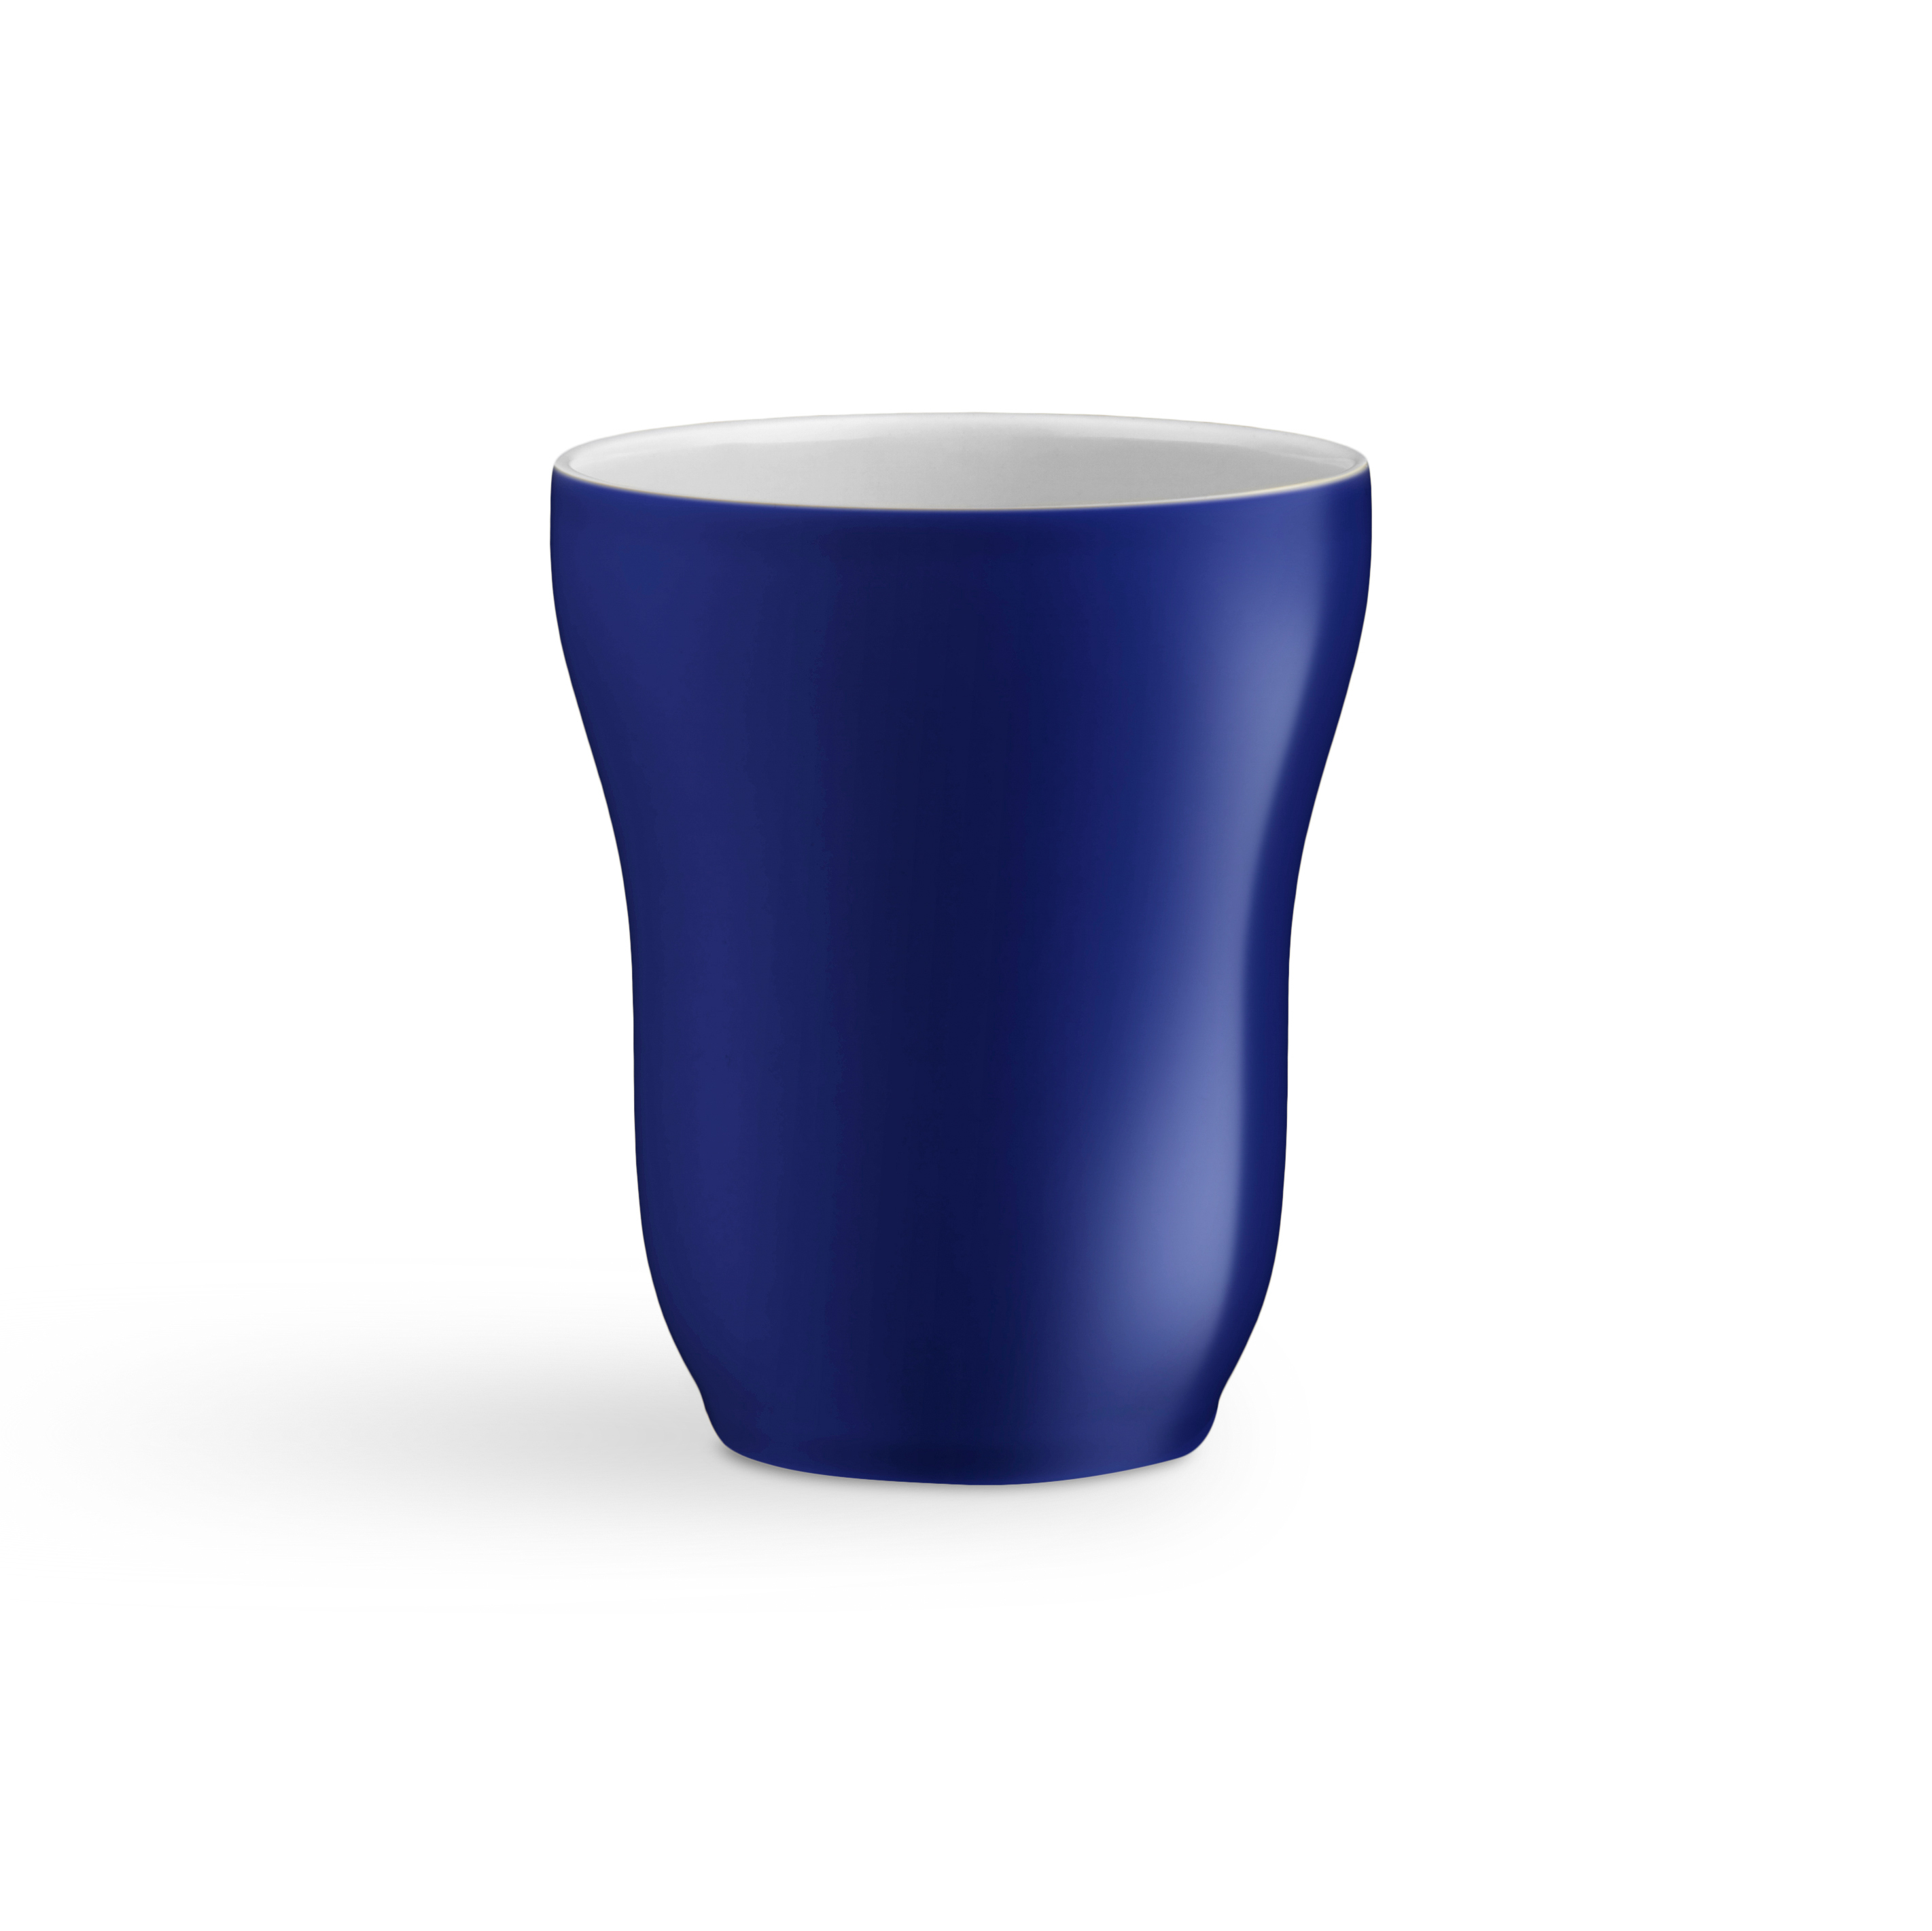 Ursula Cup